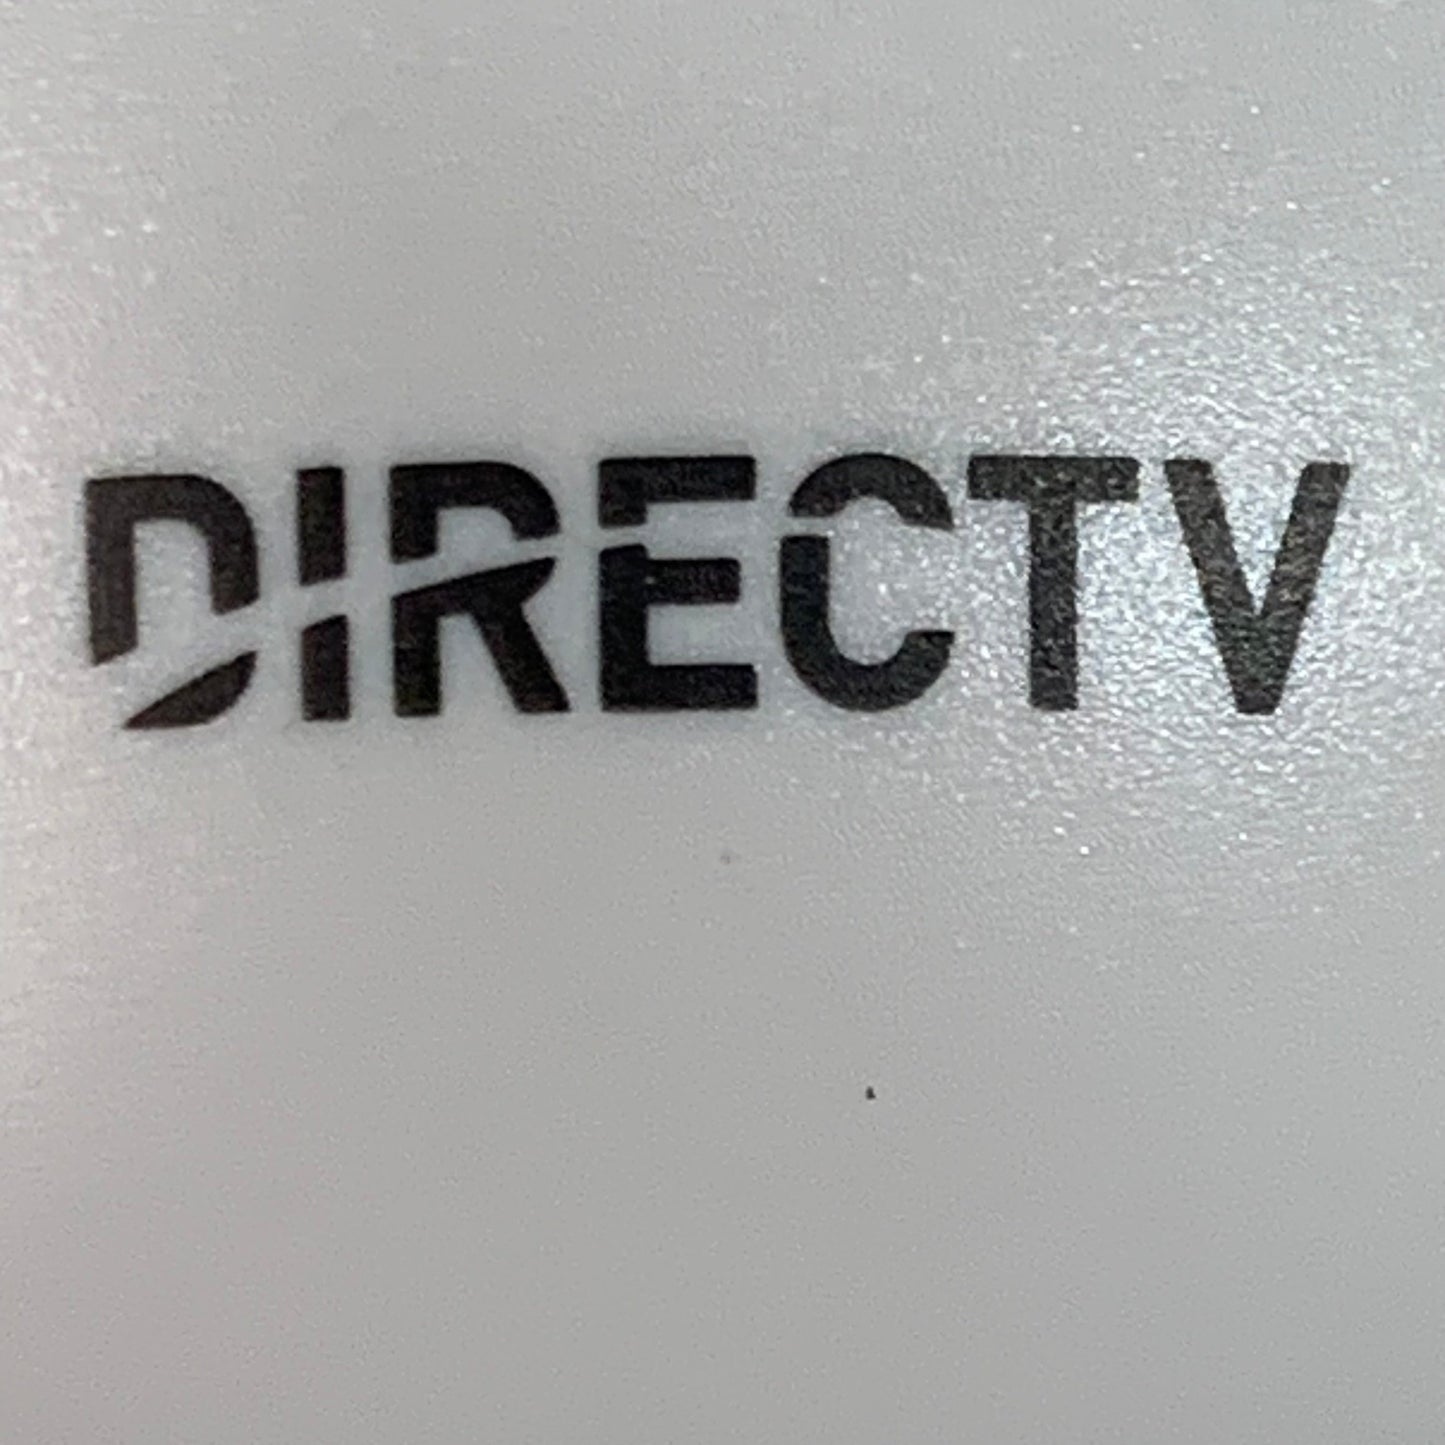 ZA@ DIRECT TV 10PK! Universal Remote Controls RC73MP-19 (New) C